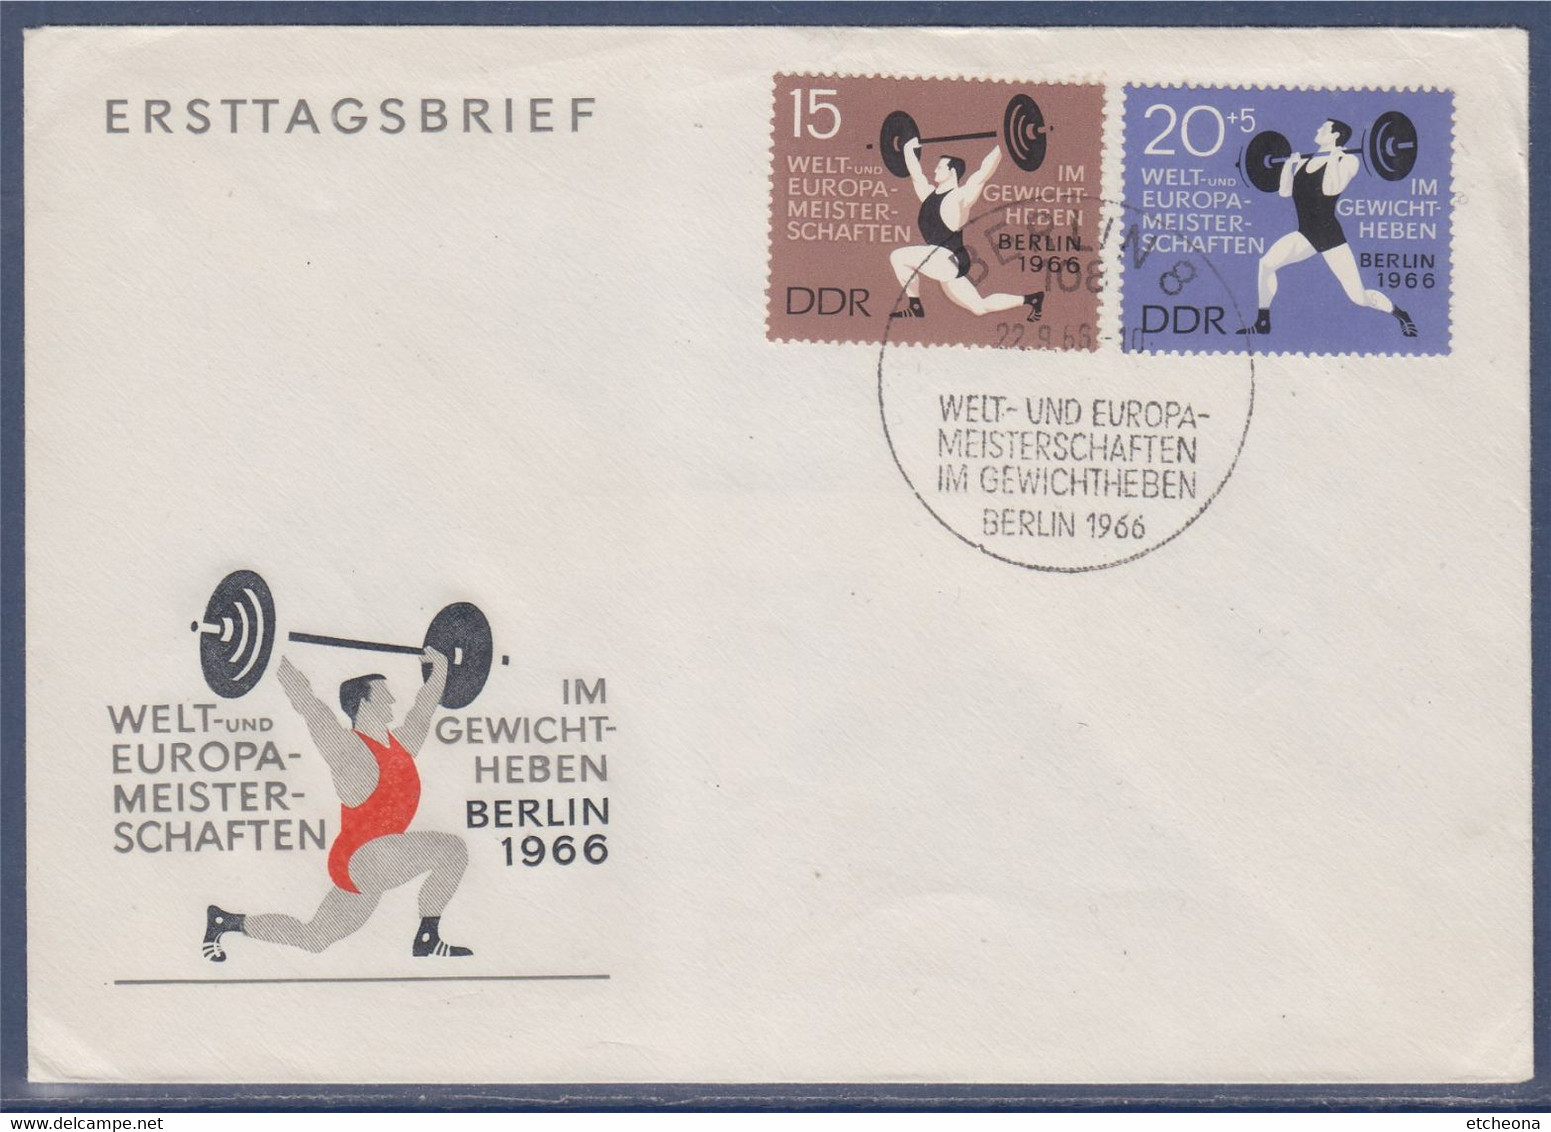 Championnats Du Monde Et D'Europe D'haltérophilie Berlin 1966 Enveloppe 2 Timbres Allemagne - Gewichtheben